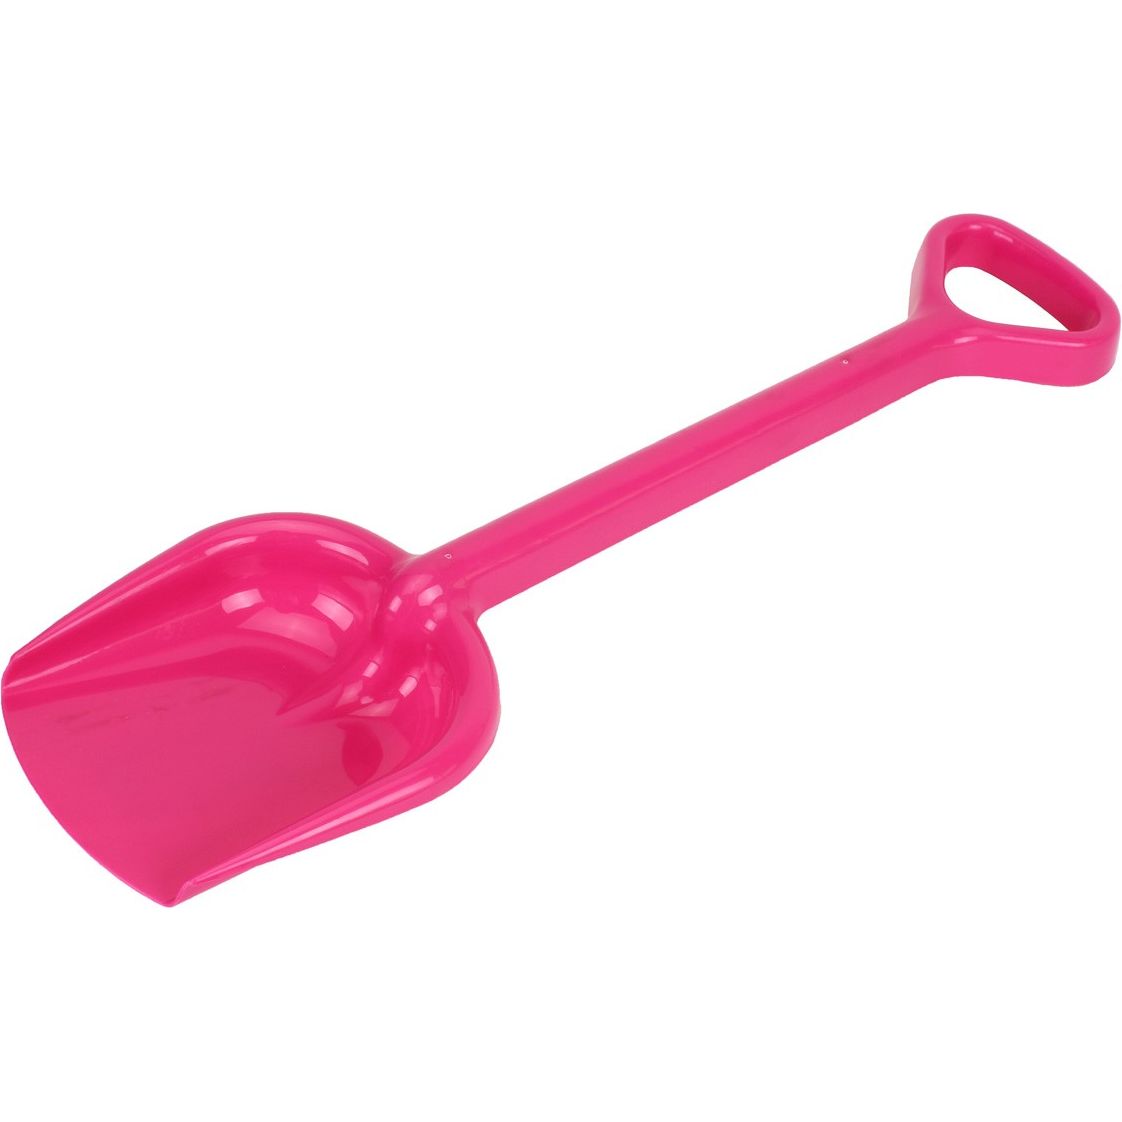 Іграшкова лопатка ТехноК Гулівер рожева (2766) - фото 1